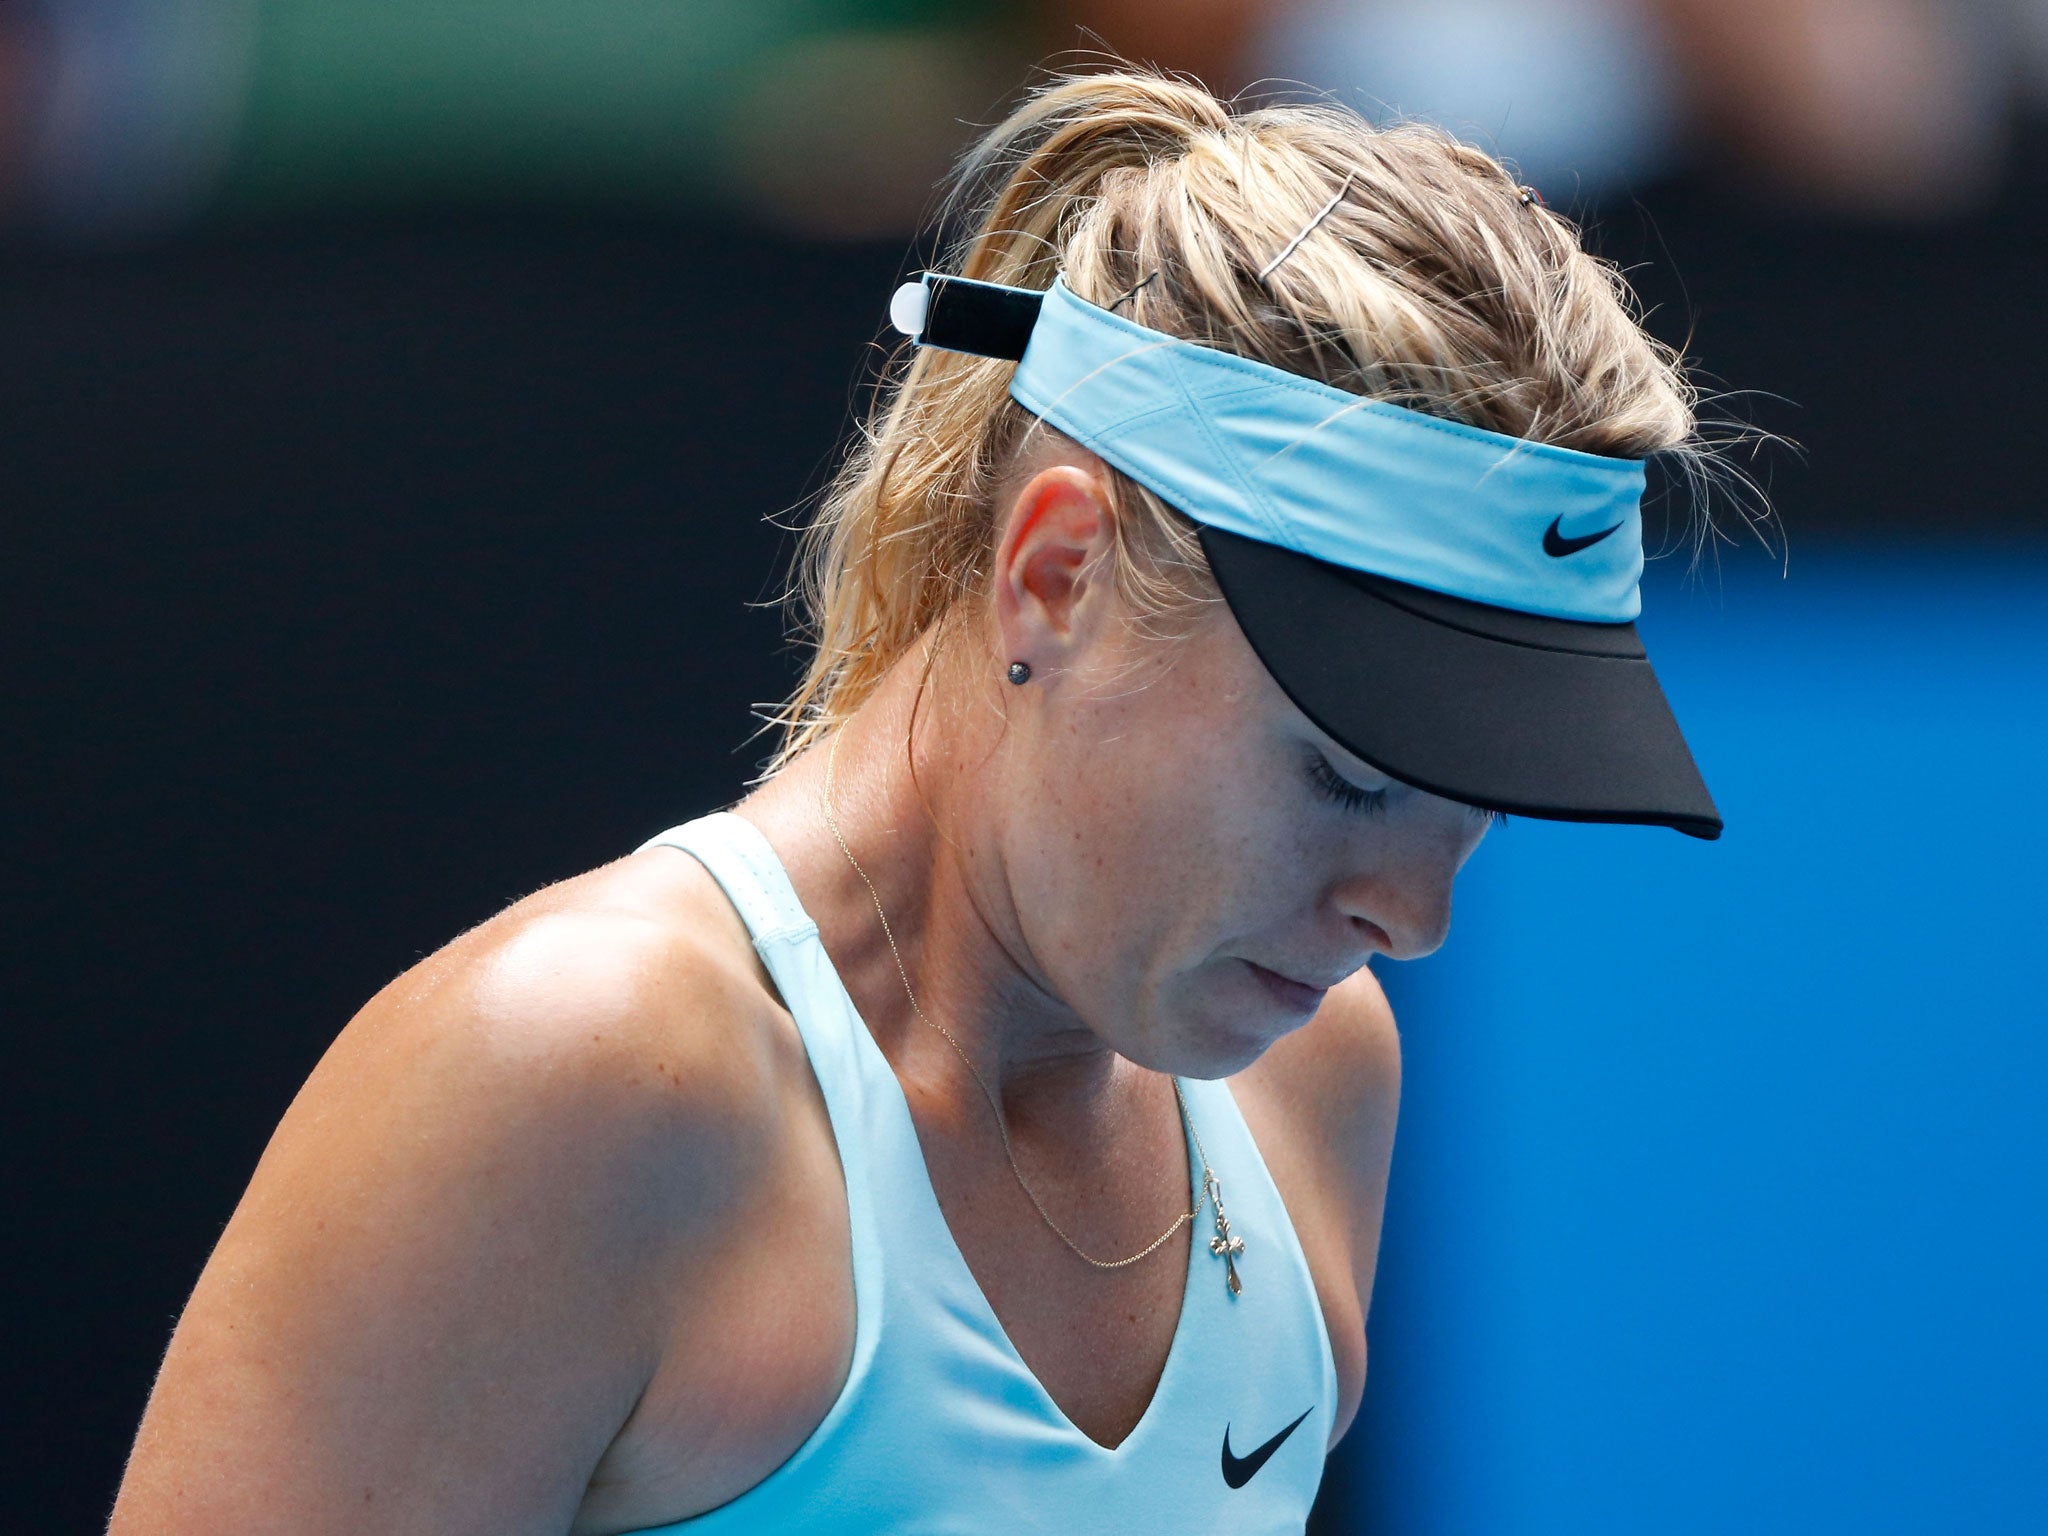 Maria Sharapova crashed out of the Australian Open in a shock loss to Dominika Cibulkova